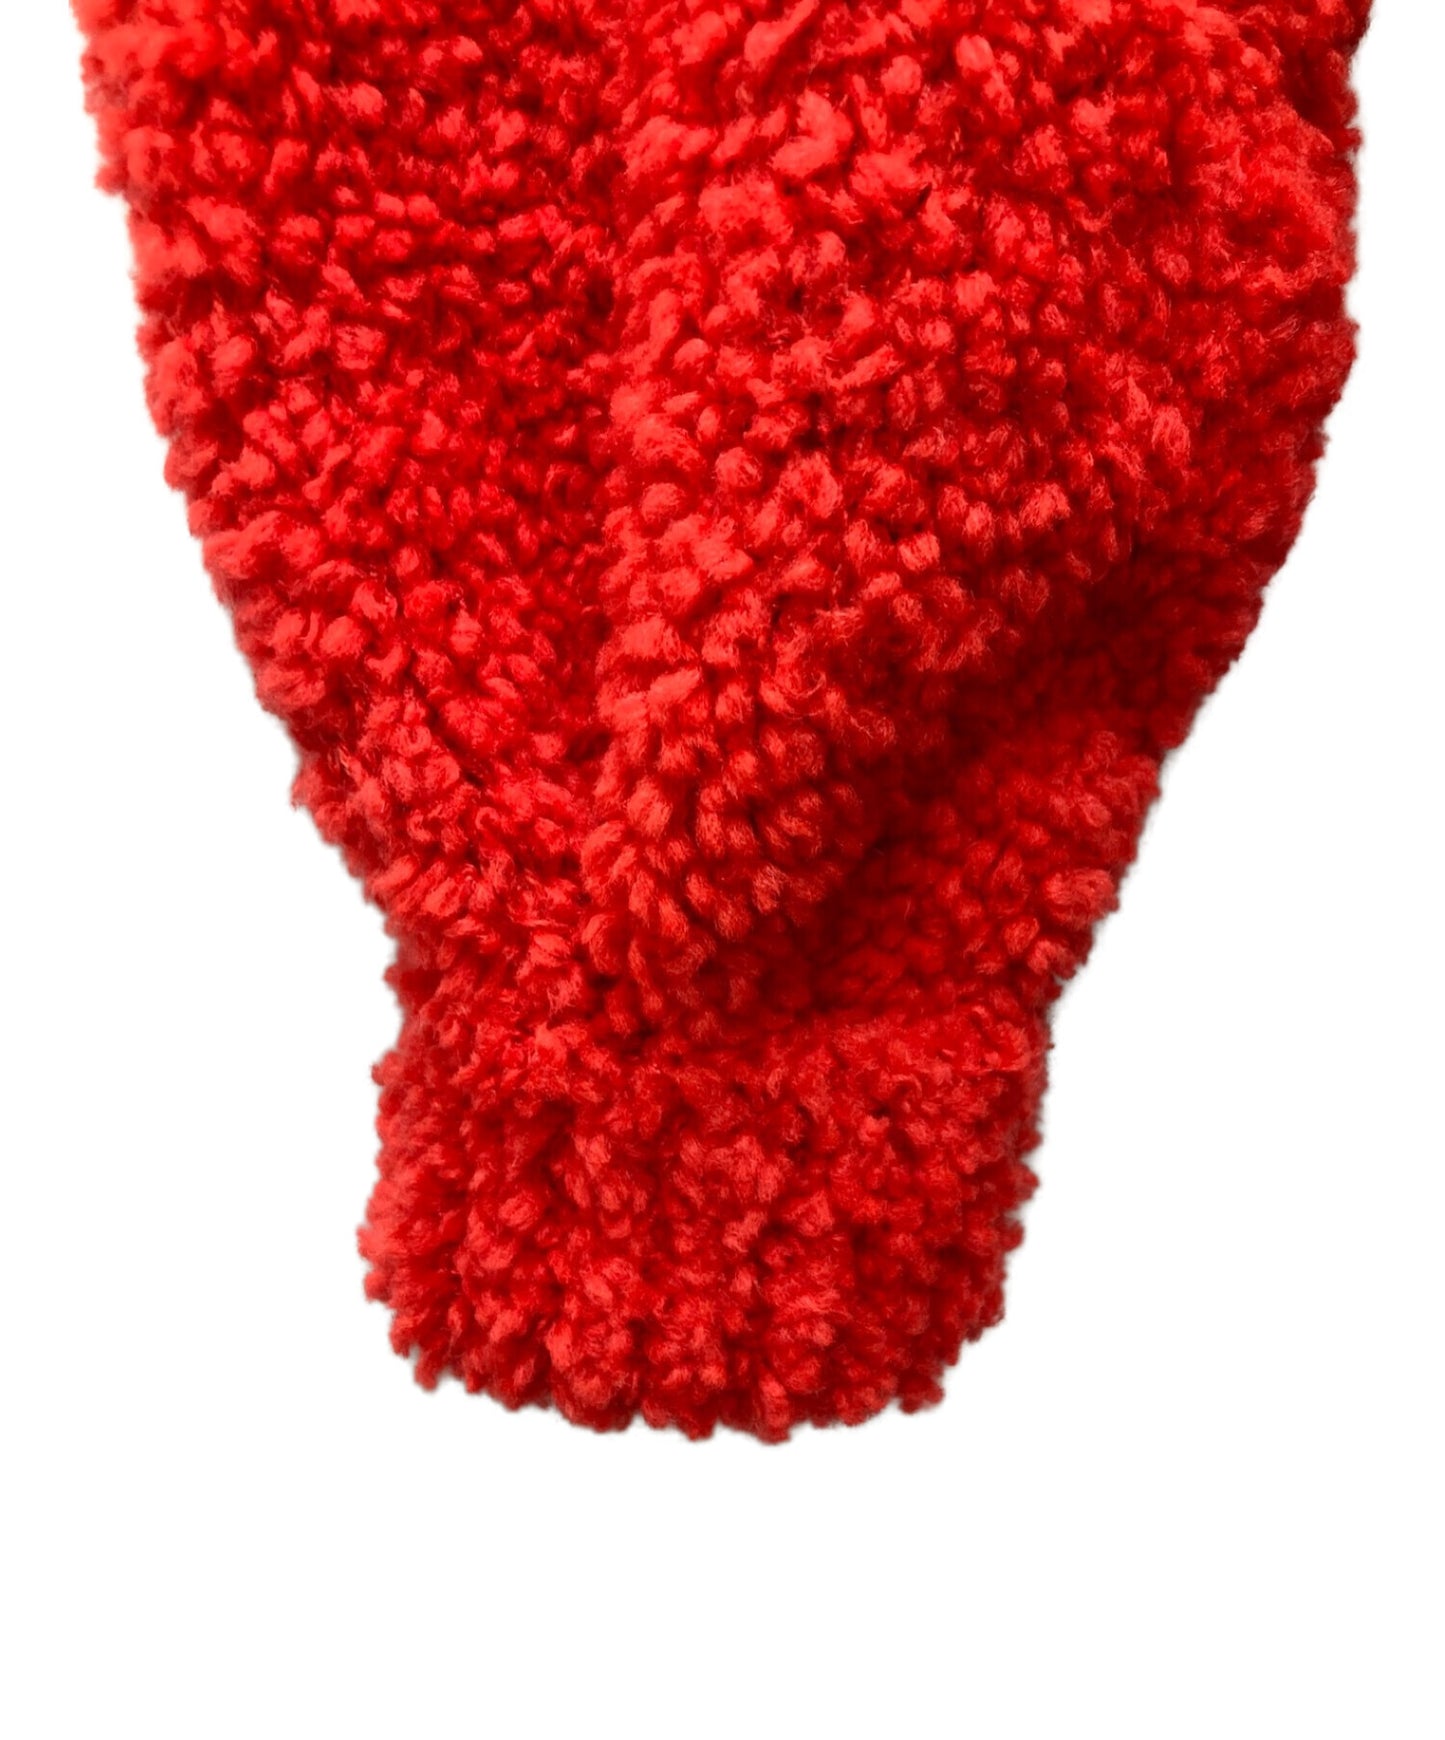 [Pre-owned] CHANEL Cashmere blend coco mark bouclé knit P62563K48070